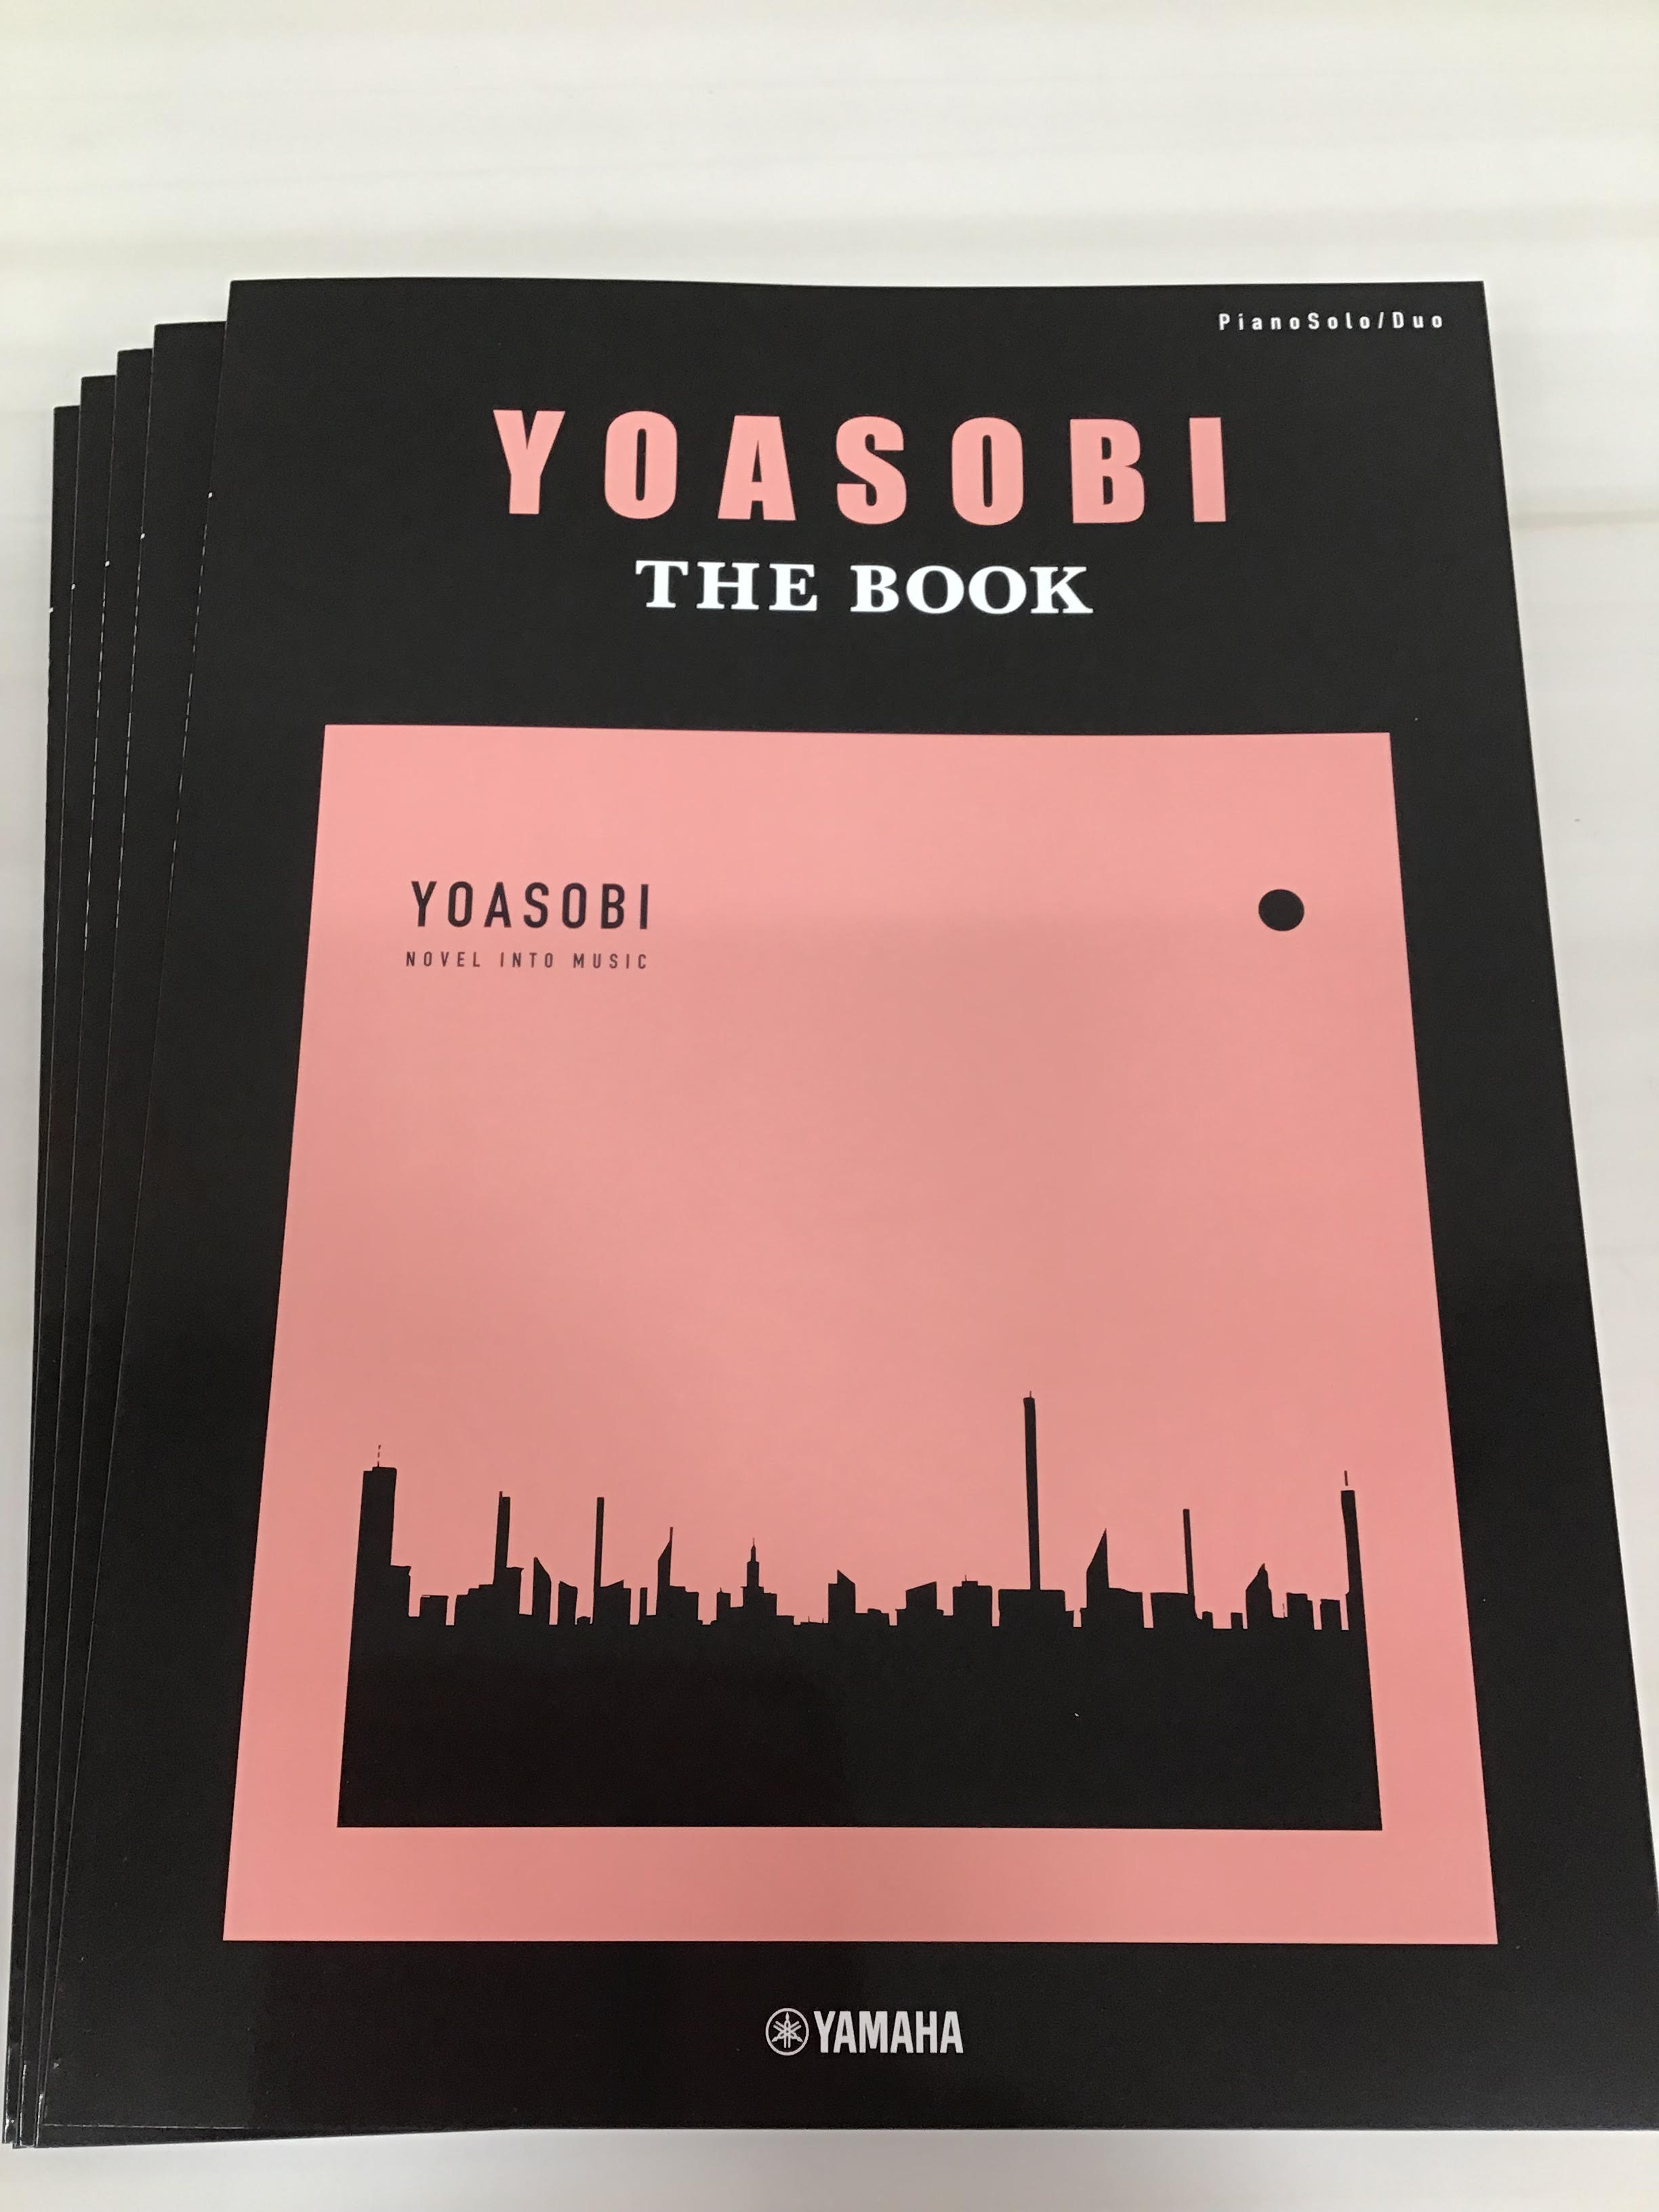 【新刊】ピアノソロ・連弾 YOASOBI「THE BOOK」が入荷しました！